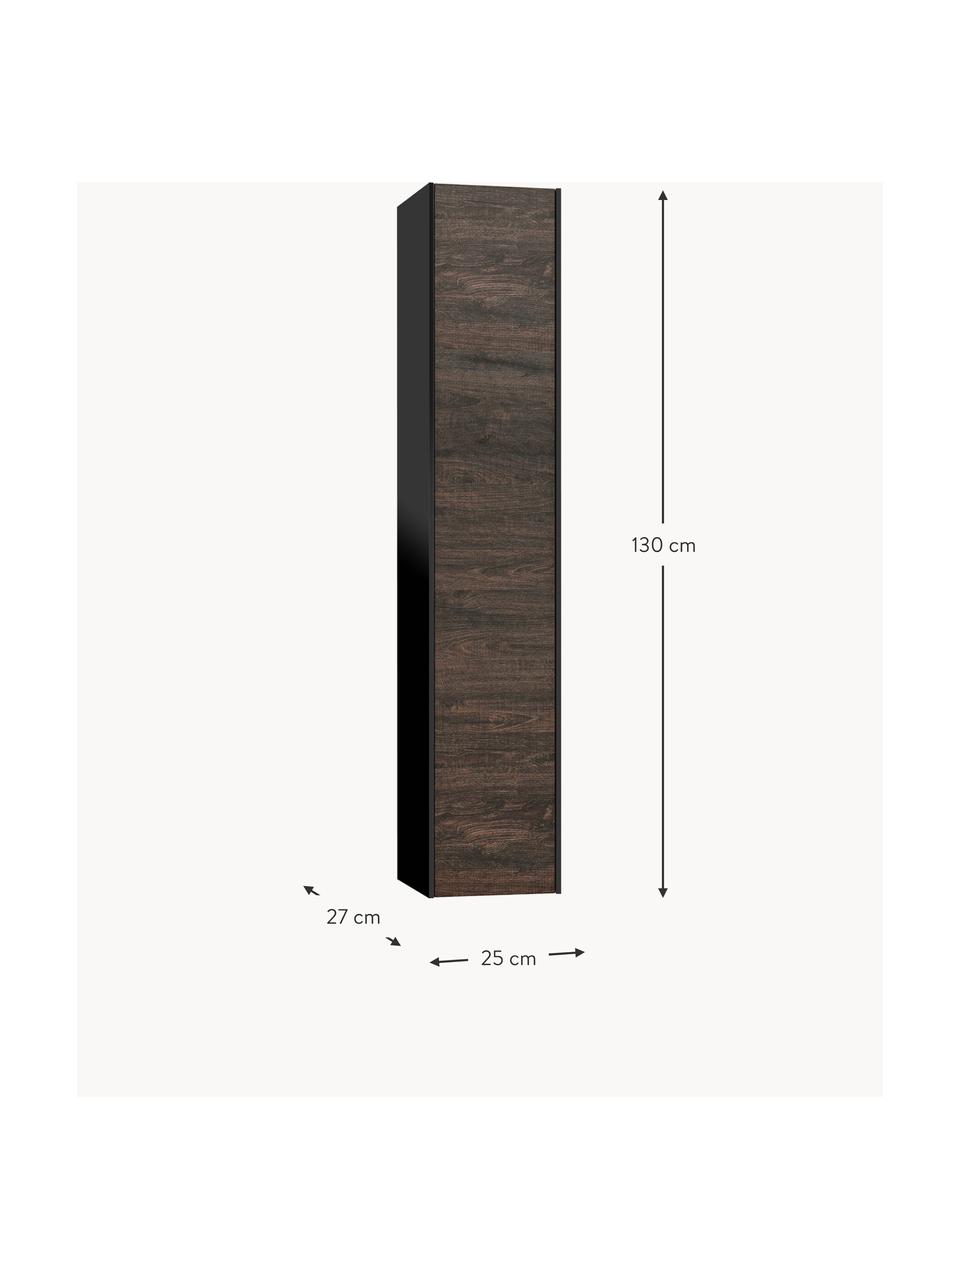 Vysoká koupelnová skříňka Ago, Š 25 cm, Vzhled jasanového dřeva, černá, Š 25 cm, V 130 cm